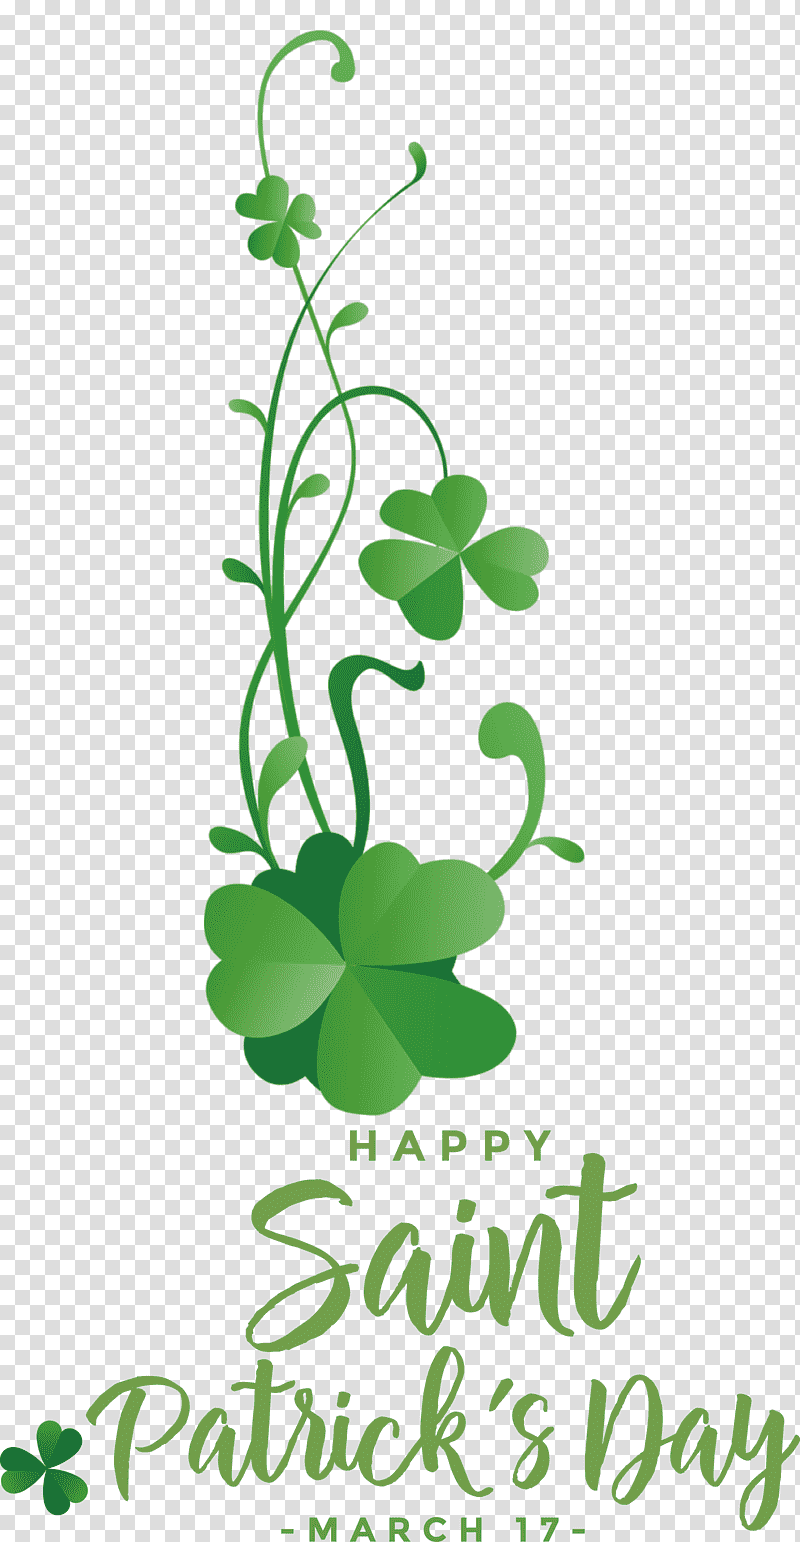 St Patricks Day Saint Patrick Happy Patricks Day, Leaf, Plant Stem, Floral Design, Shamrock, Clover, Tree transparent background PNG clipart